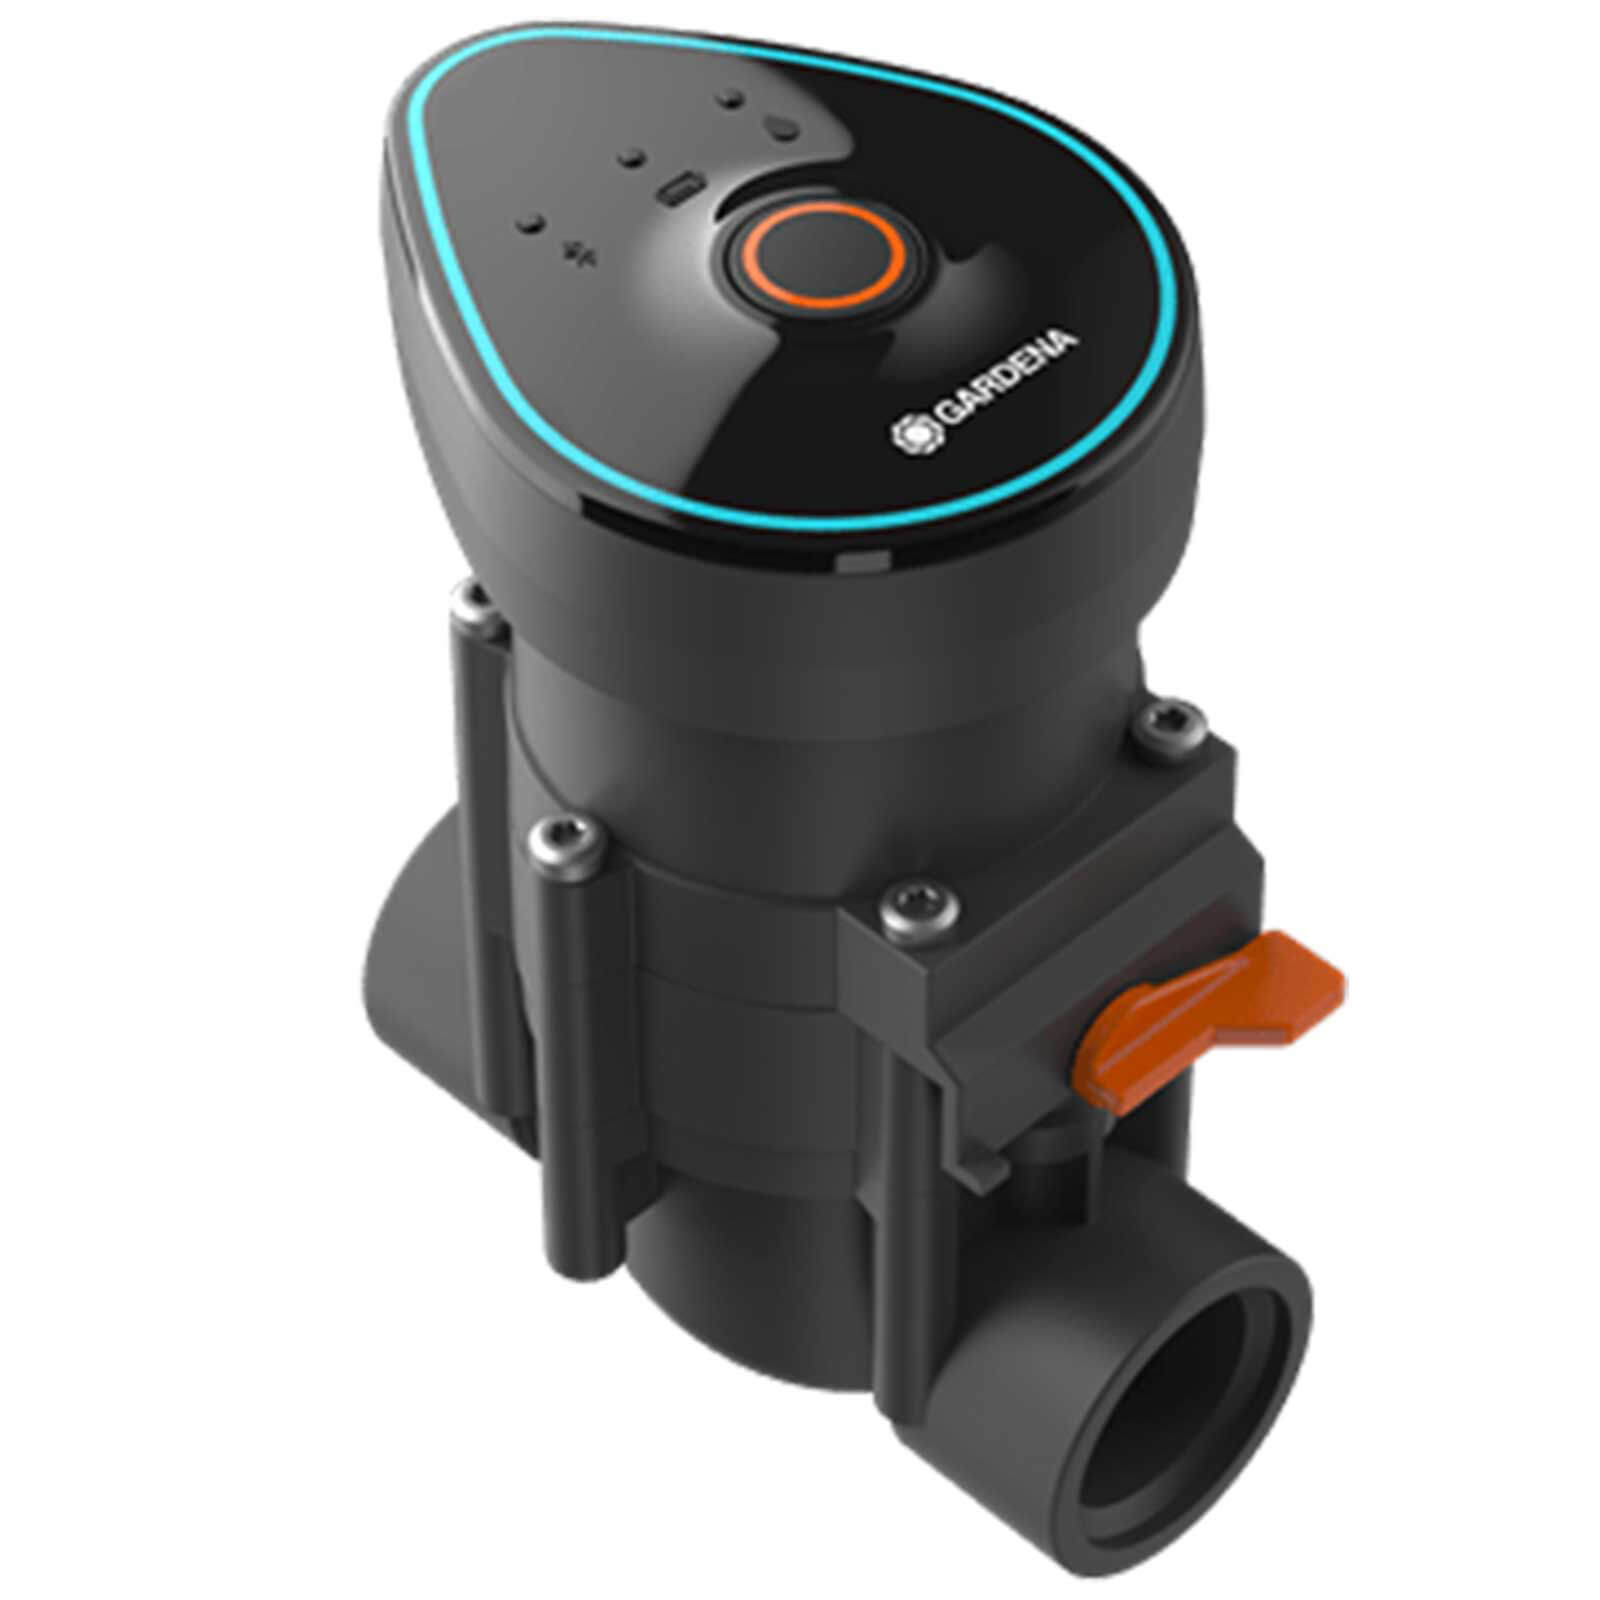 Image of Gardena SPRINKLERSYSTEM 9V Bluetooth Irrigation Valve 1" / 25mm